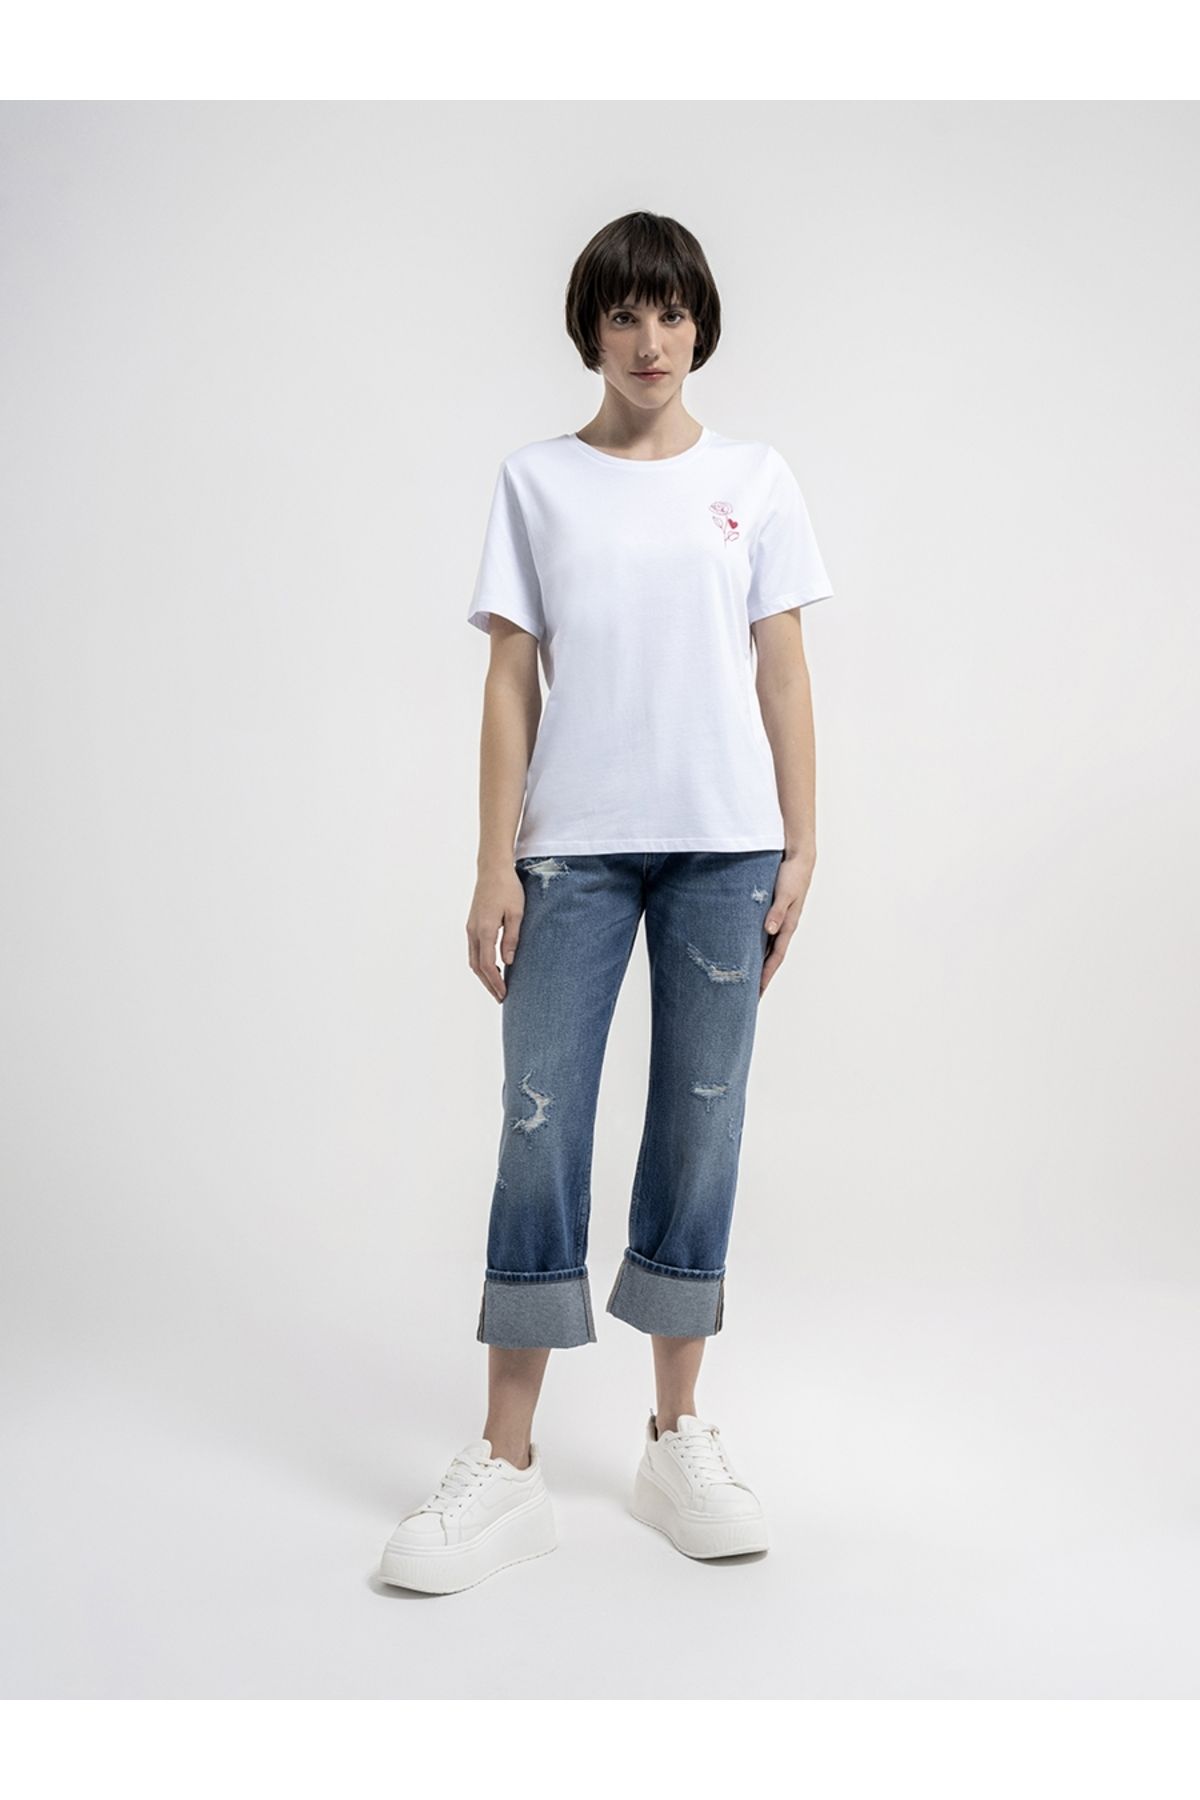 Loft Lf2035659 Kadın T-shirt Whıte